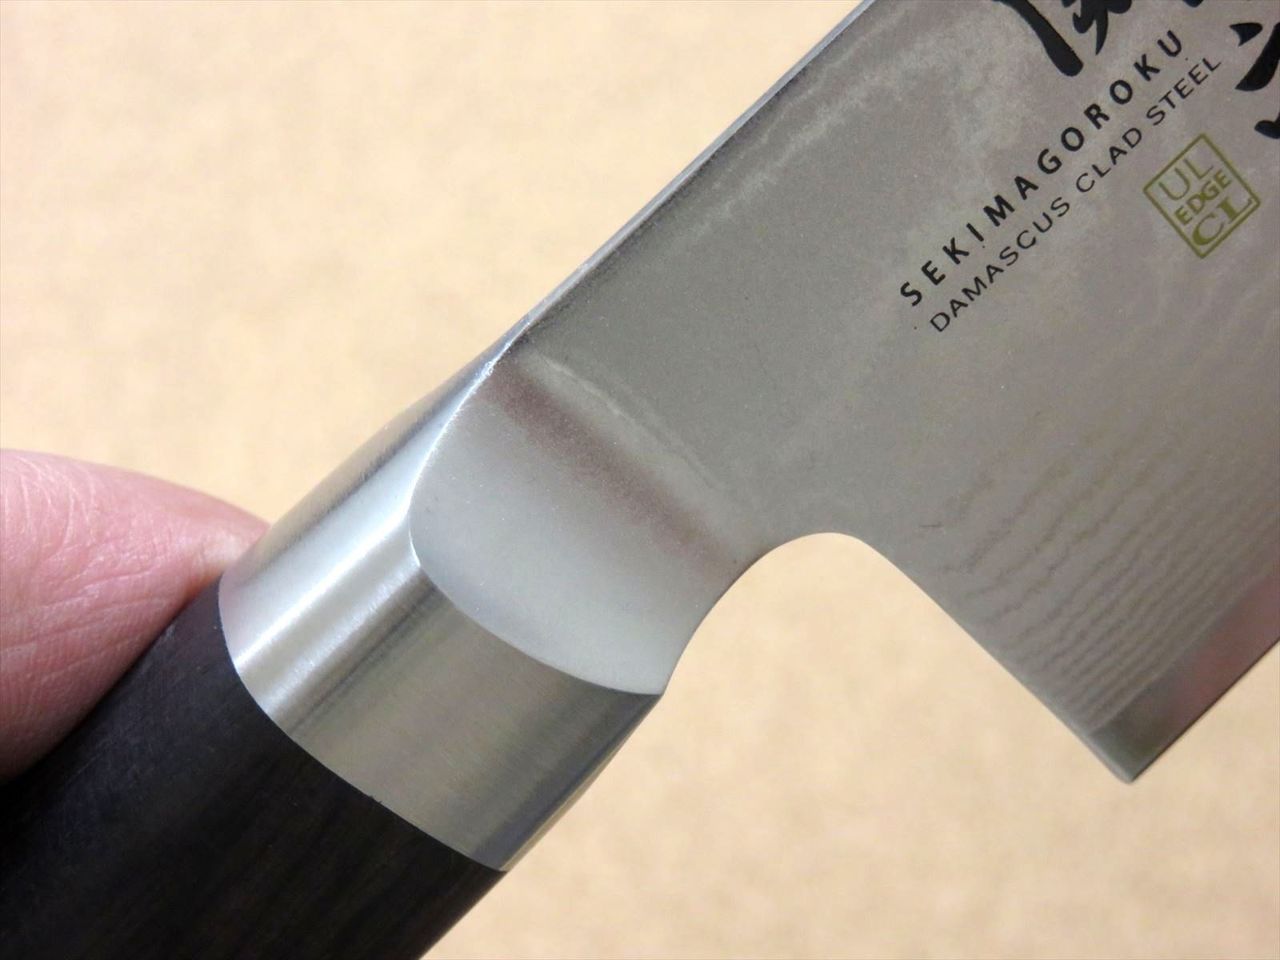 Japanese KAI MAGOROKU Kitchen Santoku Knife 165mm 6 1/2 in Damascus steel JAPAN